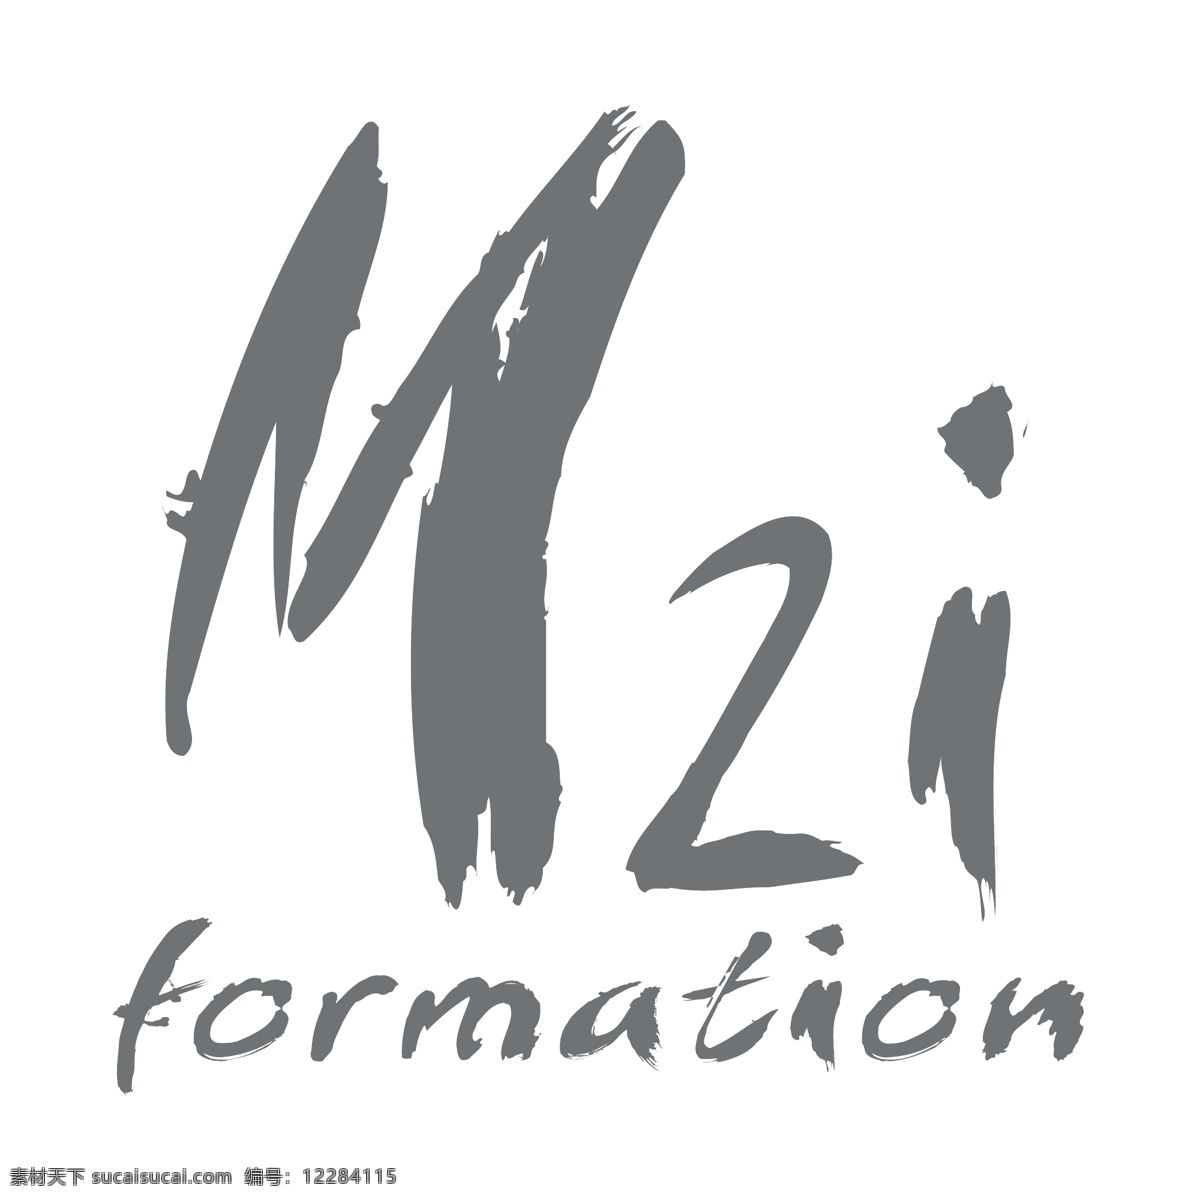 m2i m2i的形成 形成 免费 矢量 图形 形成矢量 形成设计 形成矢量矢量 形成开放 形成商业 标志 蓝色